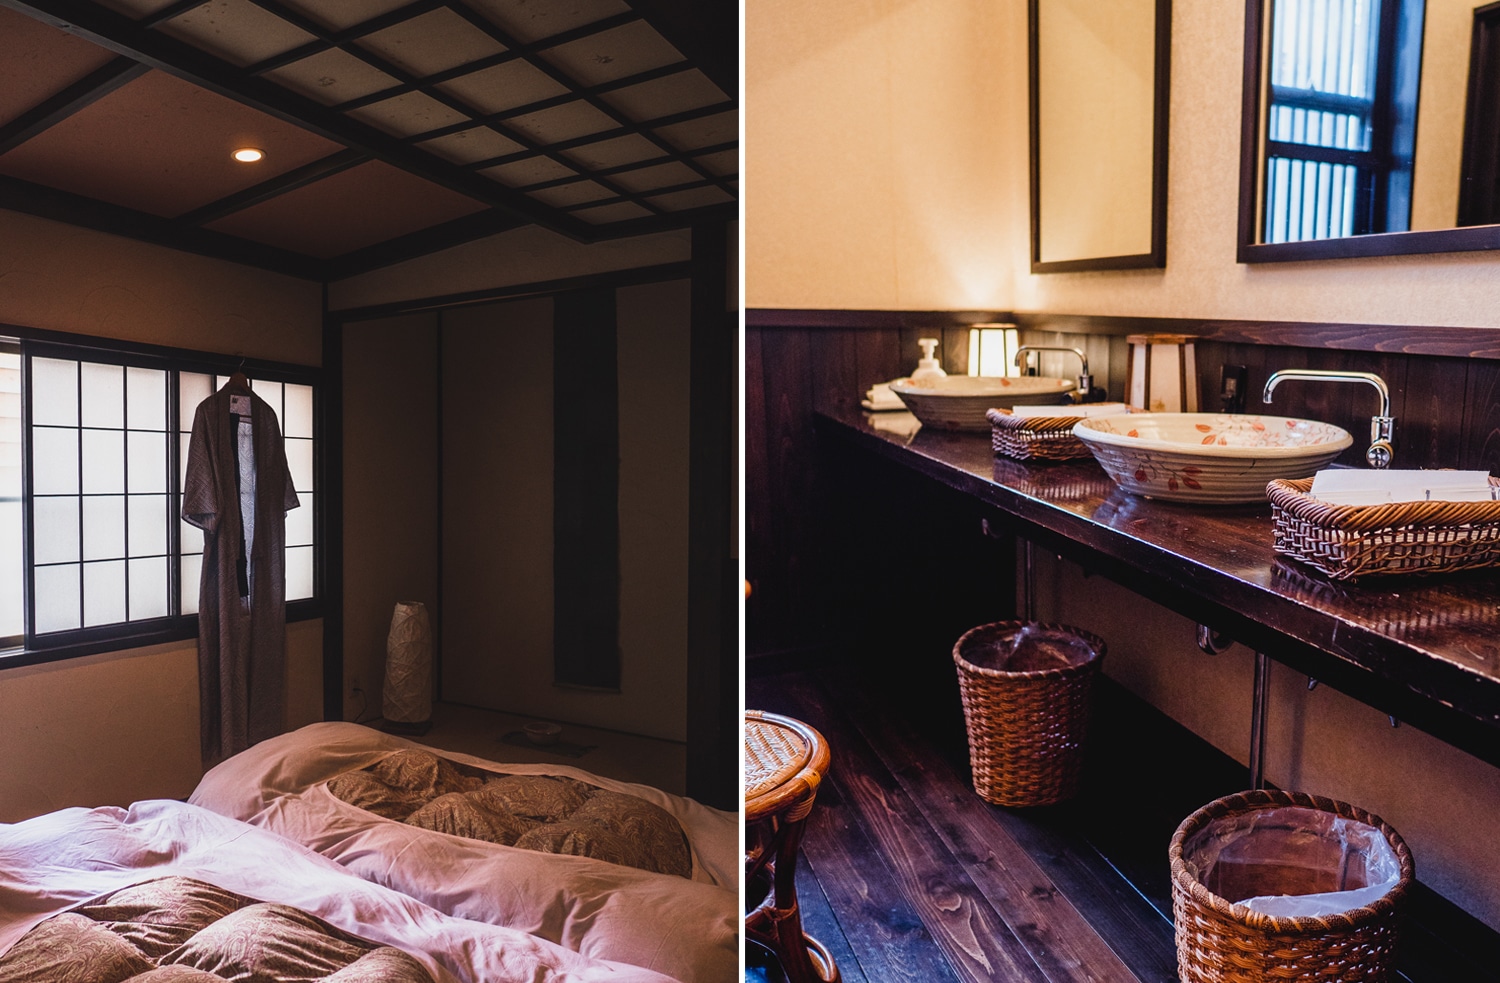 dormir dans un ryokan, experience à vivre au japon, voyage au japon, japon, auberge traditionnelle japonaise